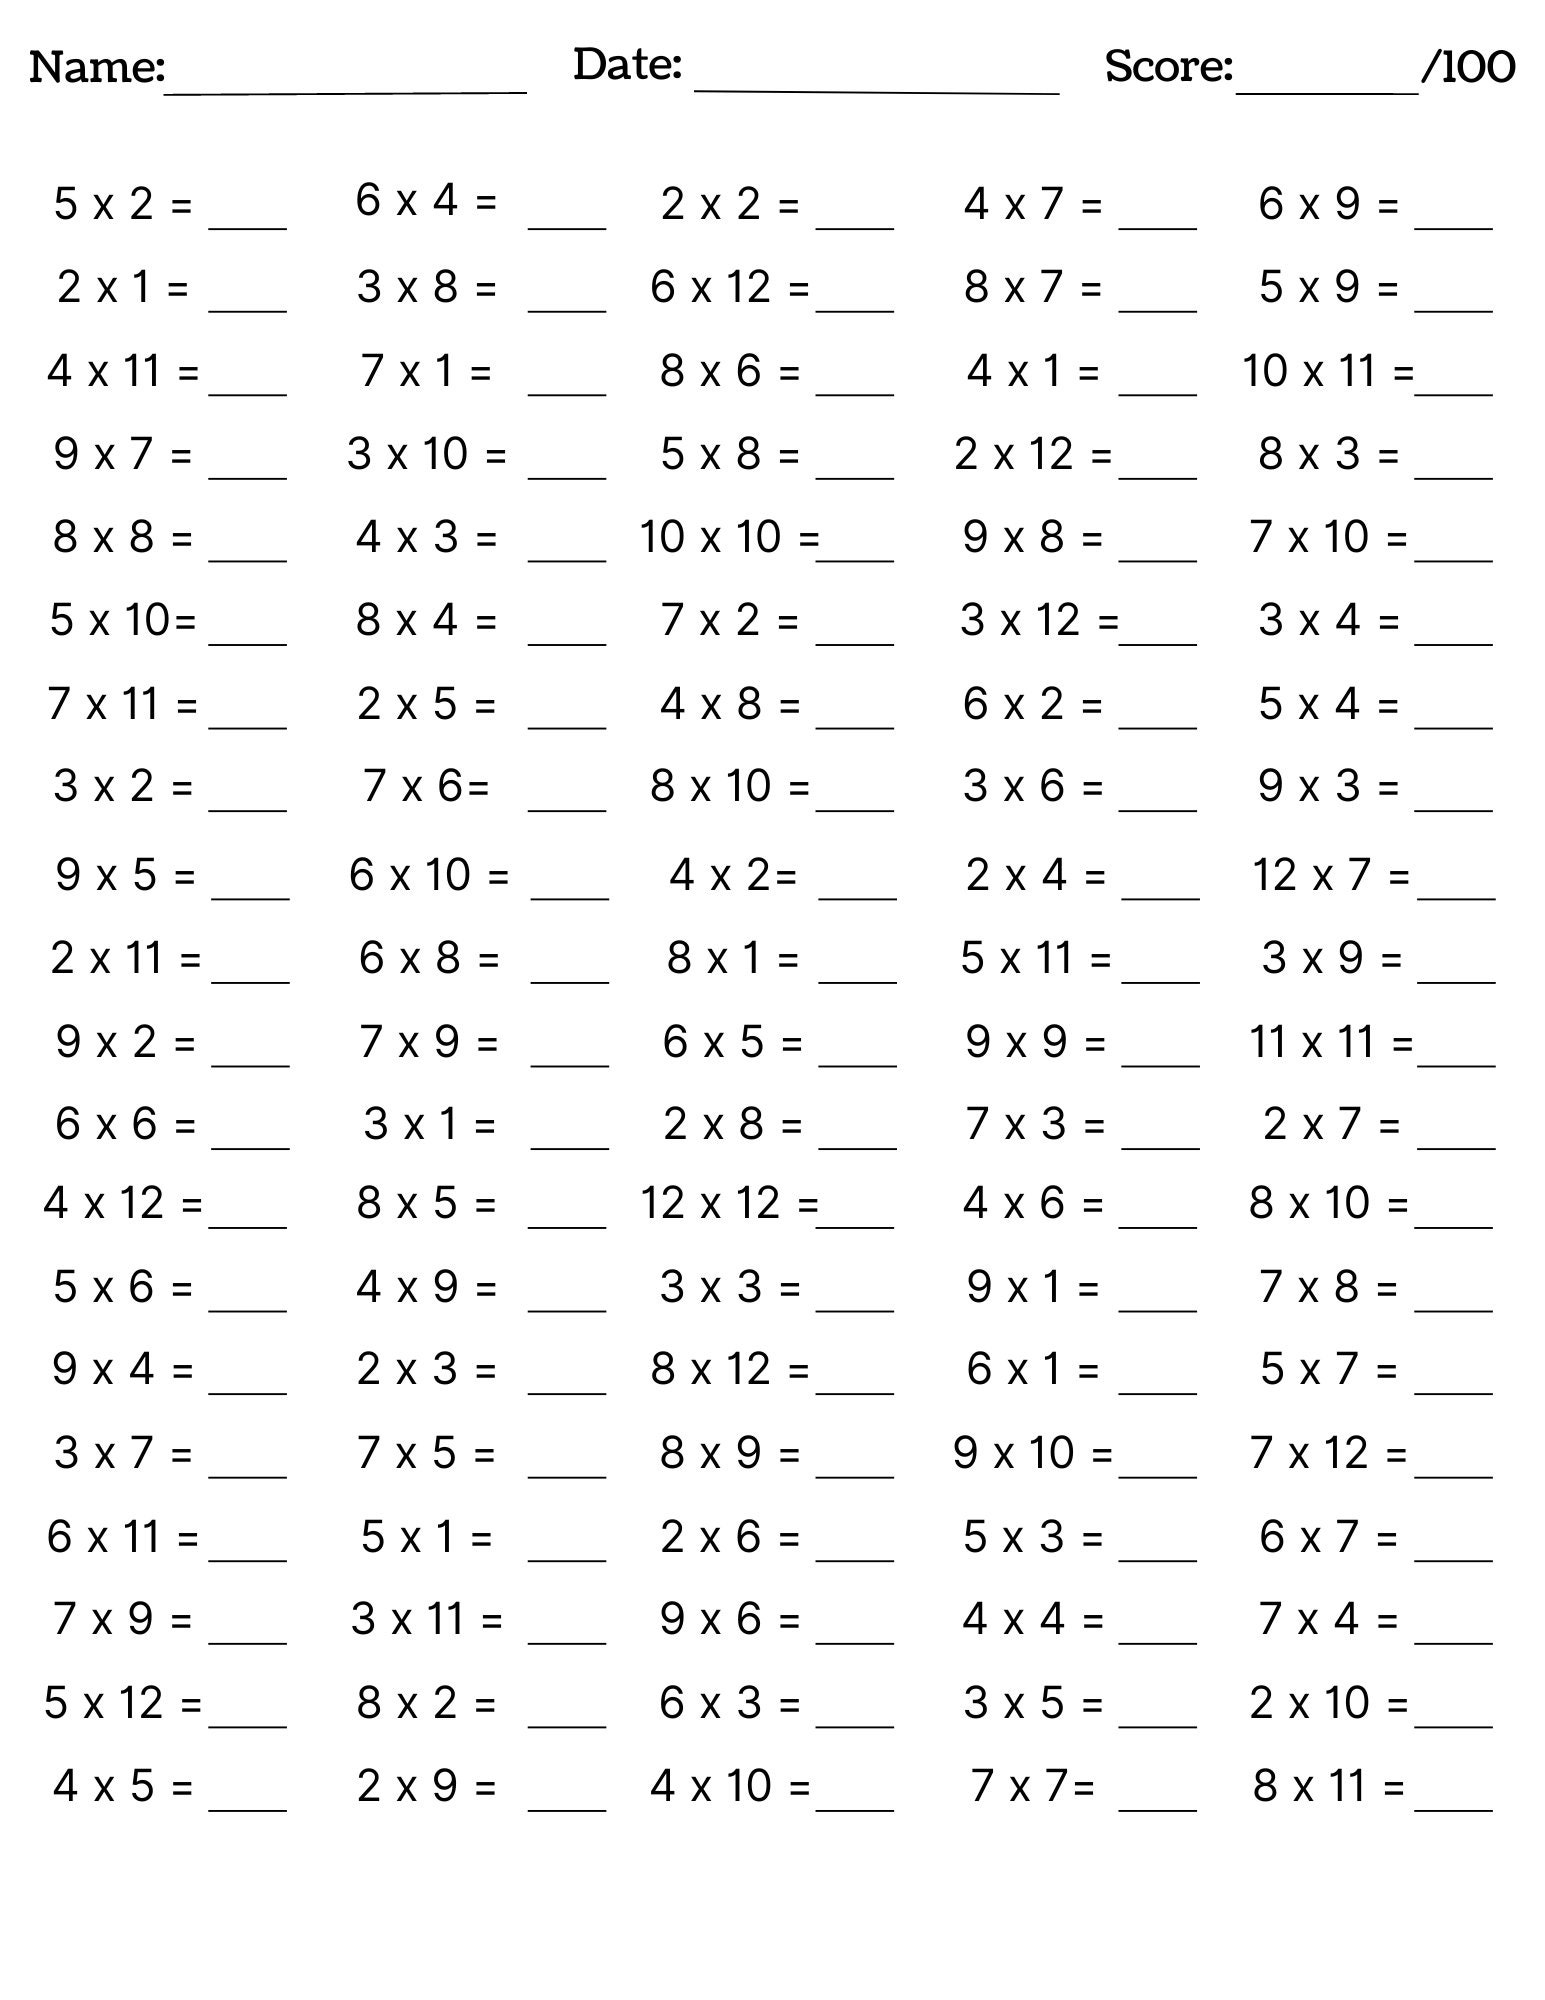 Multiplication Practice Worksheets Free Printable